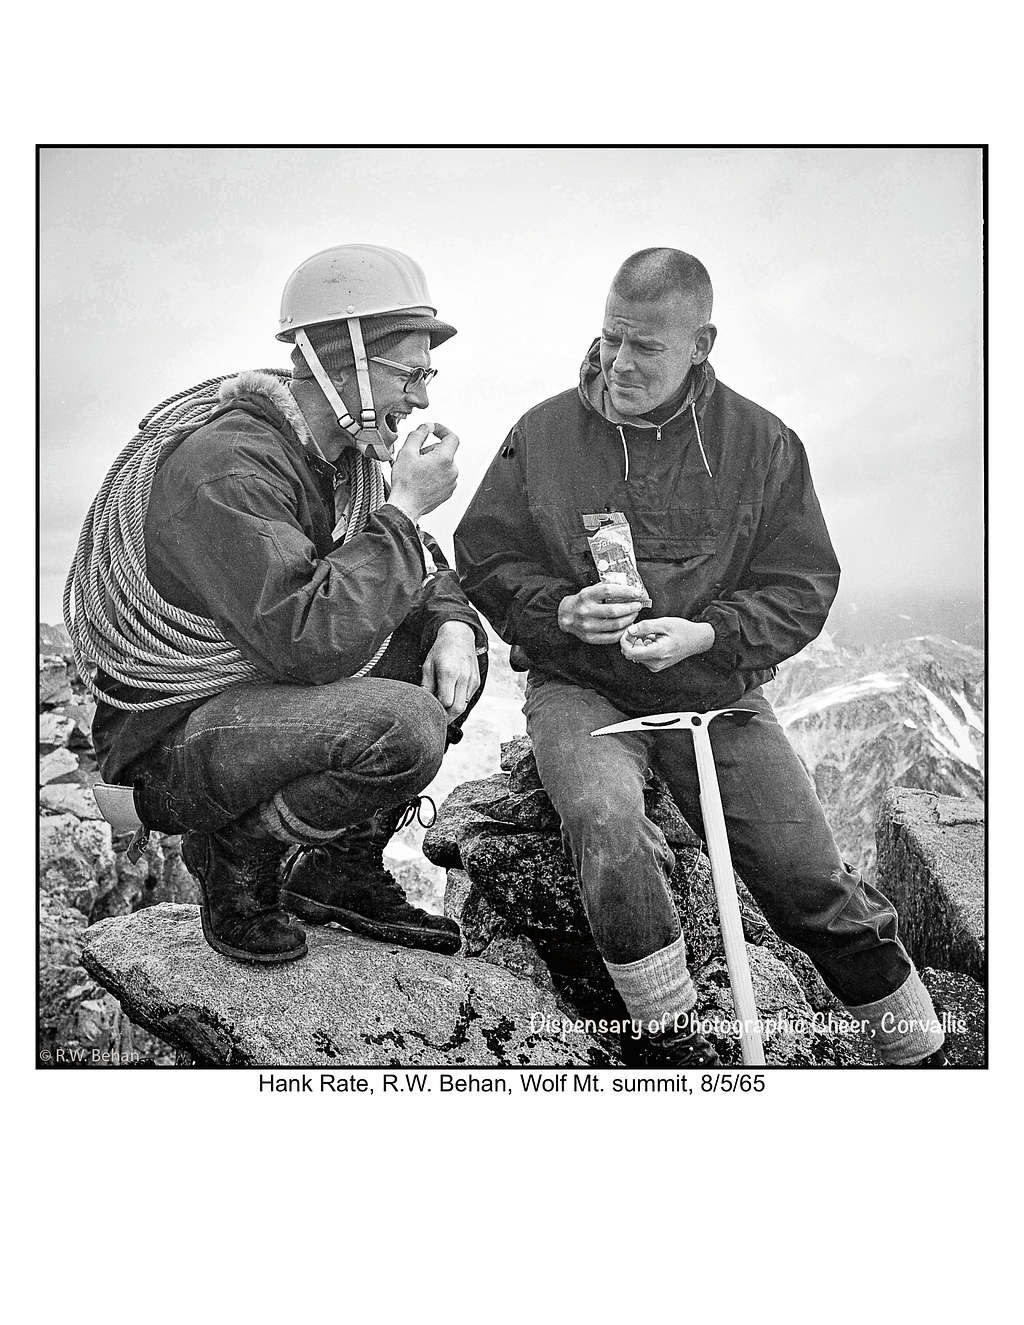 Hank and RWB on Wolf Mountain summit